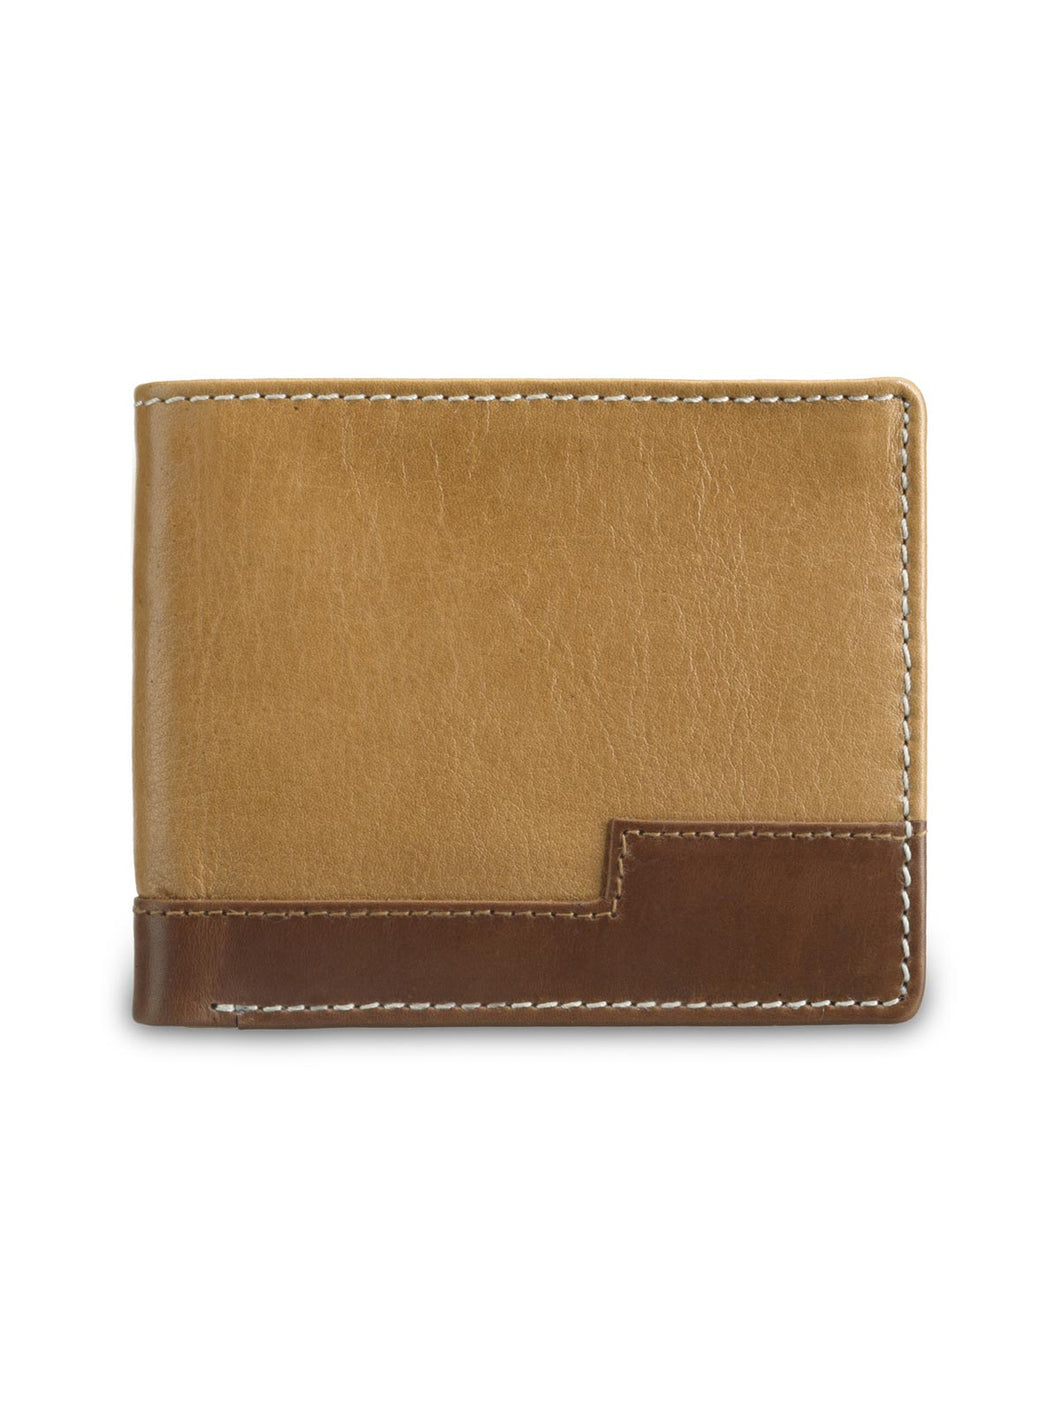 Teakwood Genuine Leather Wallet